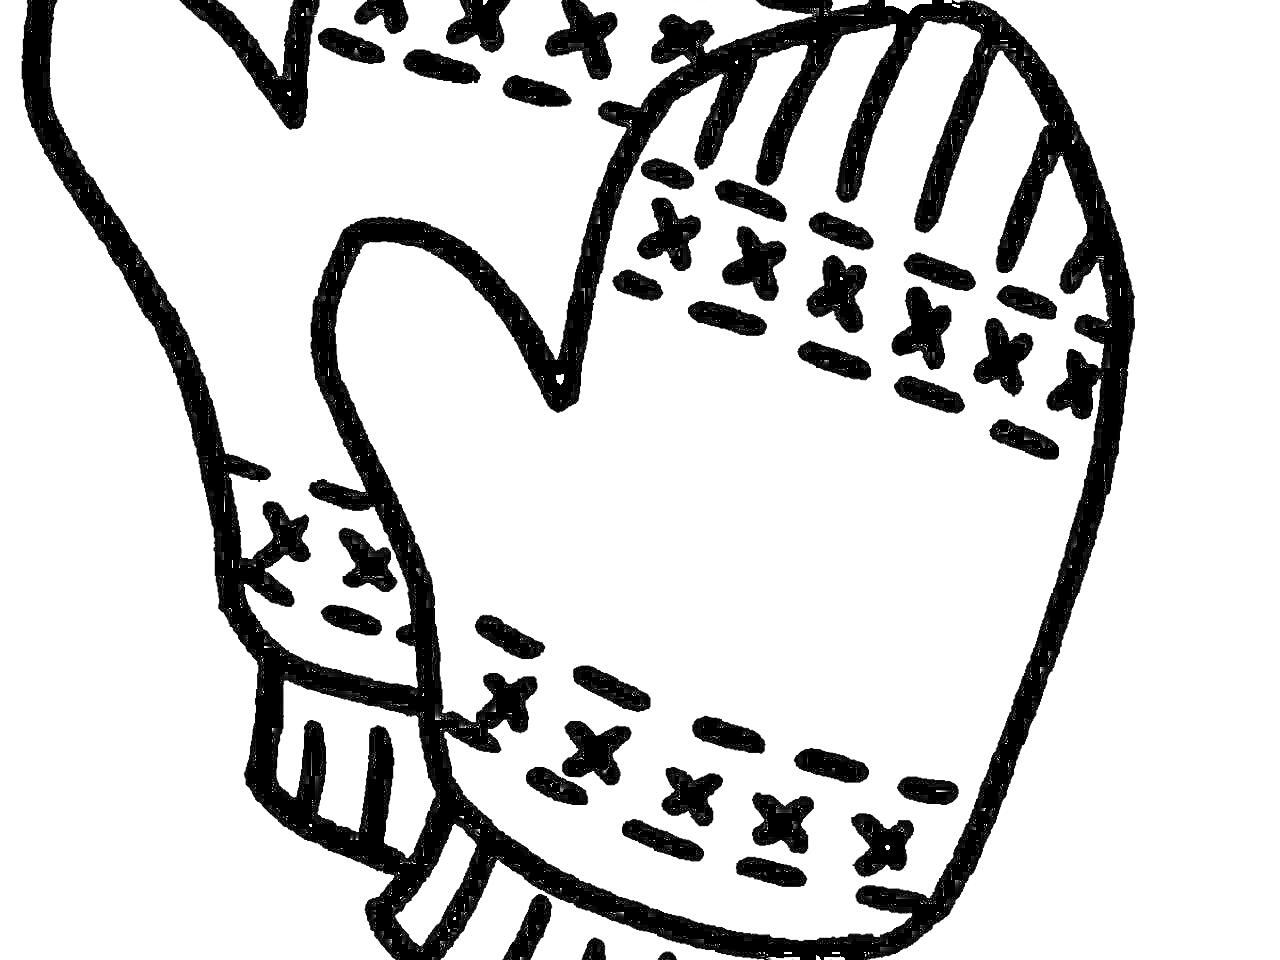 Варежки с узорами (две варежки с рисунком крестиков и полосок)